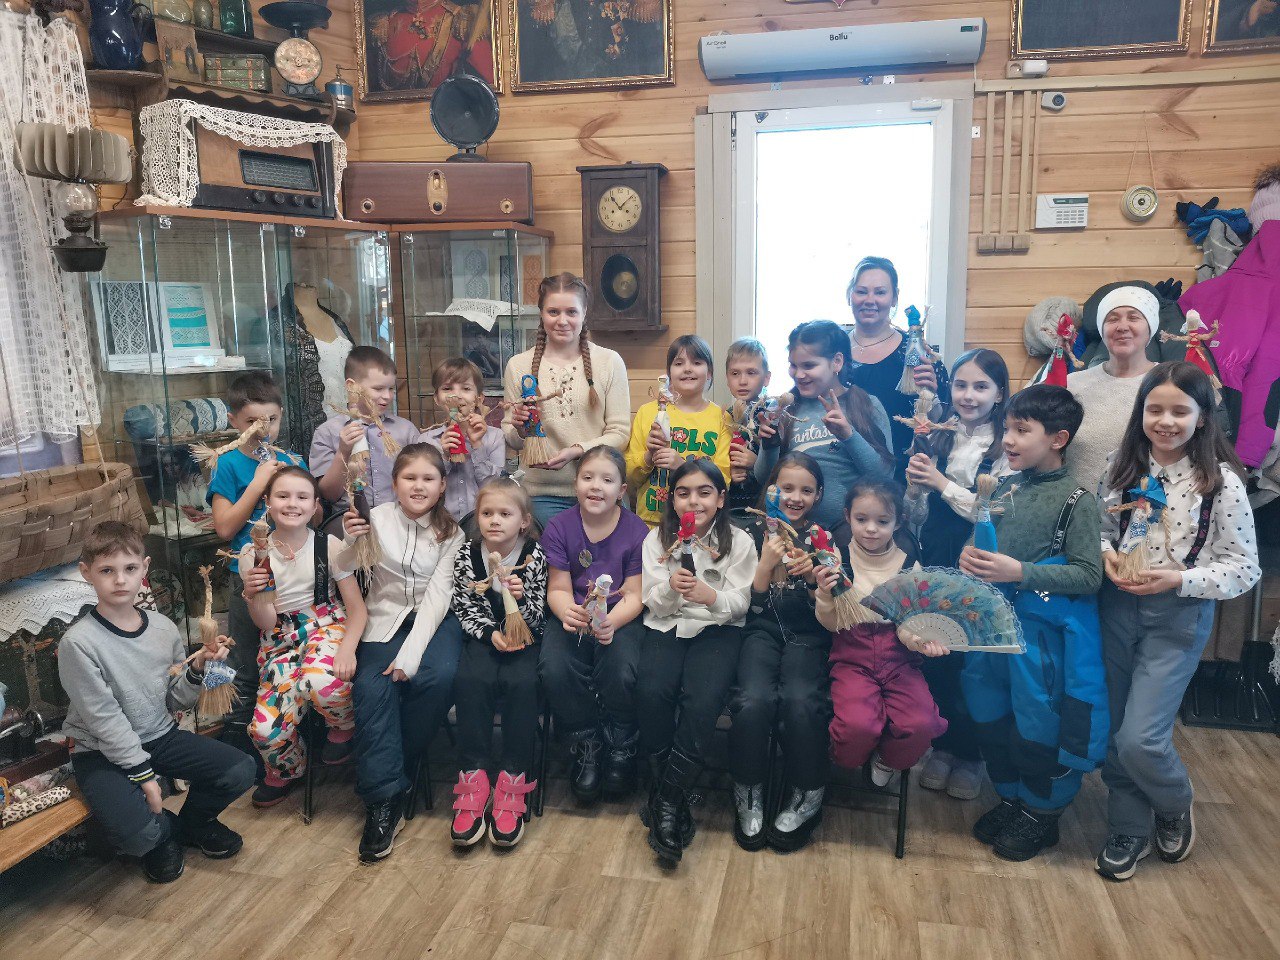 Мастер-класс по изготовлению обережных кукол из лыка состоялся в Выставочном зале истории и краеведения в поселении Роговское